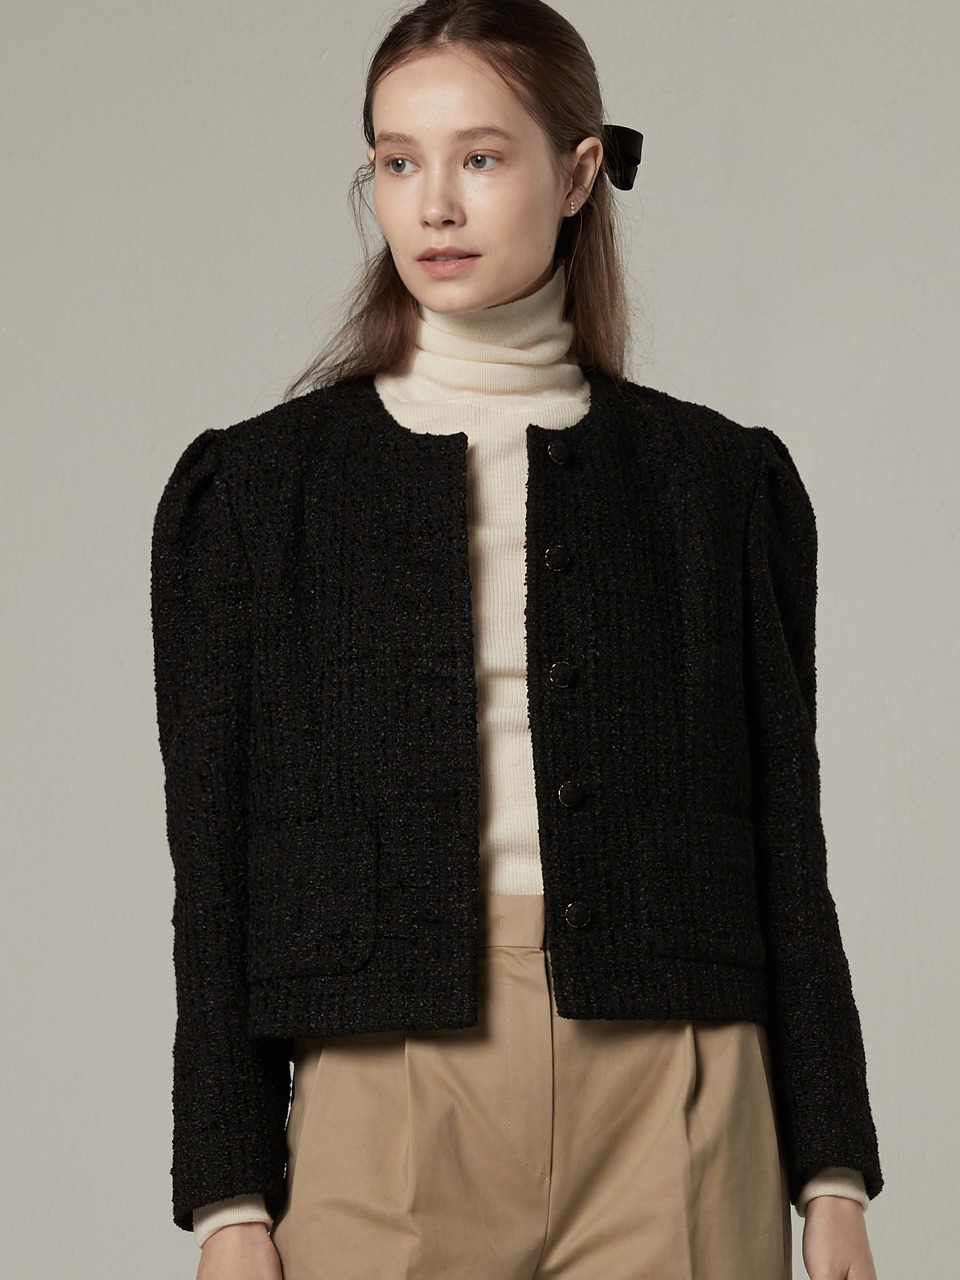 Voluminous tweed crop jacket - Black